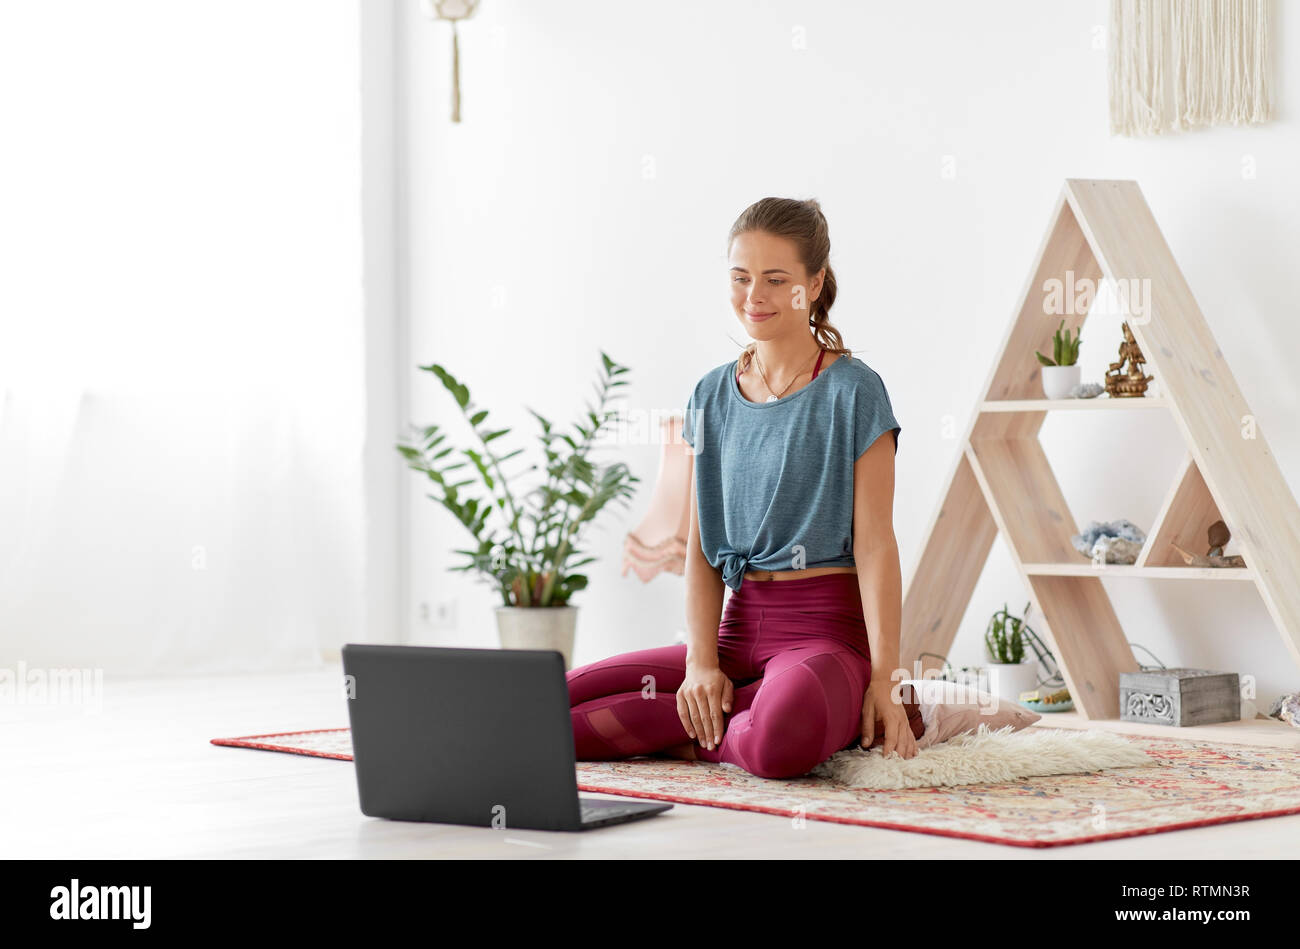 Frau mit Laptop bei Yoga Studio Stockfoto